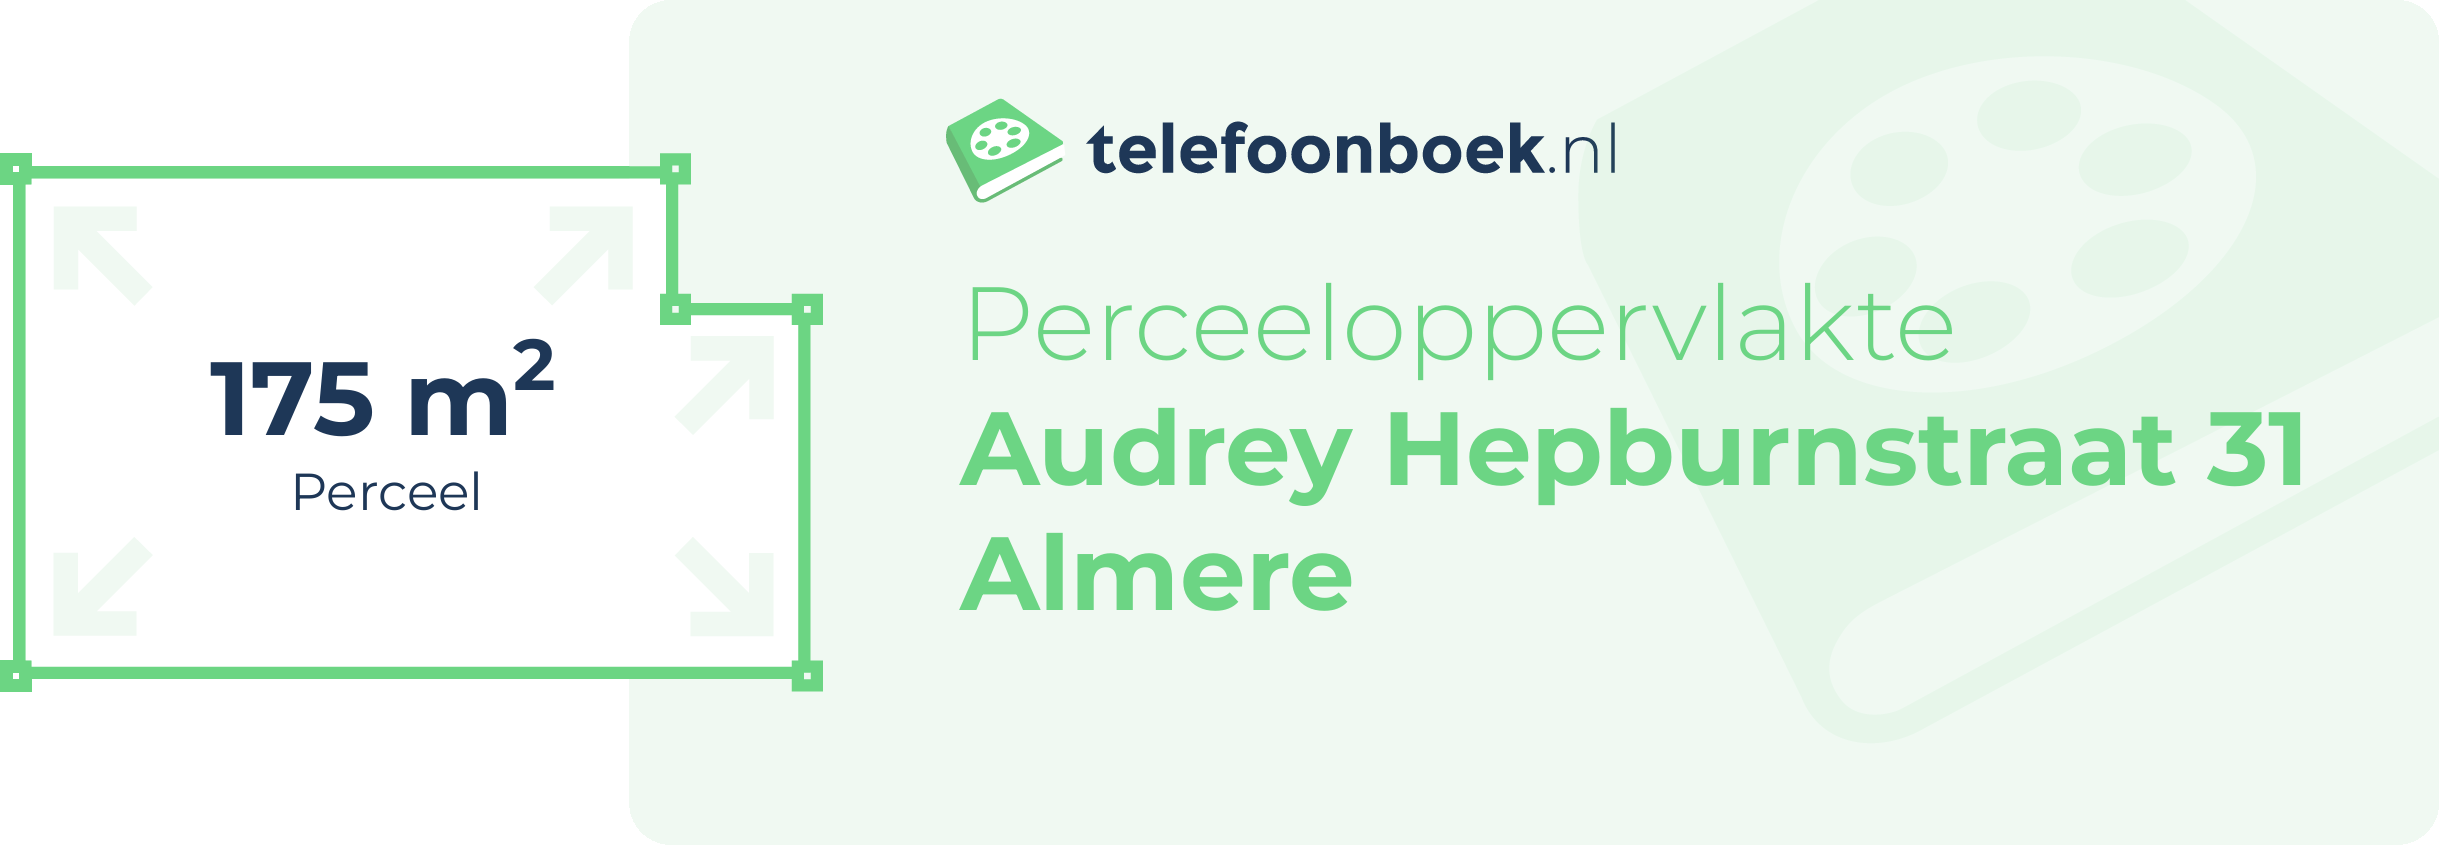 Perceeloppervlakte Audrey Hepburnstraat 31 Almere